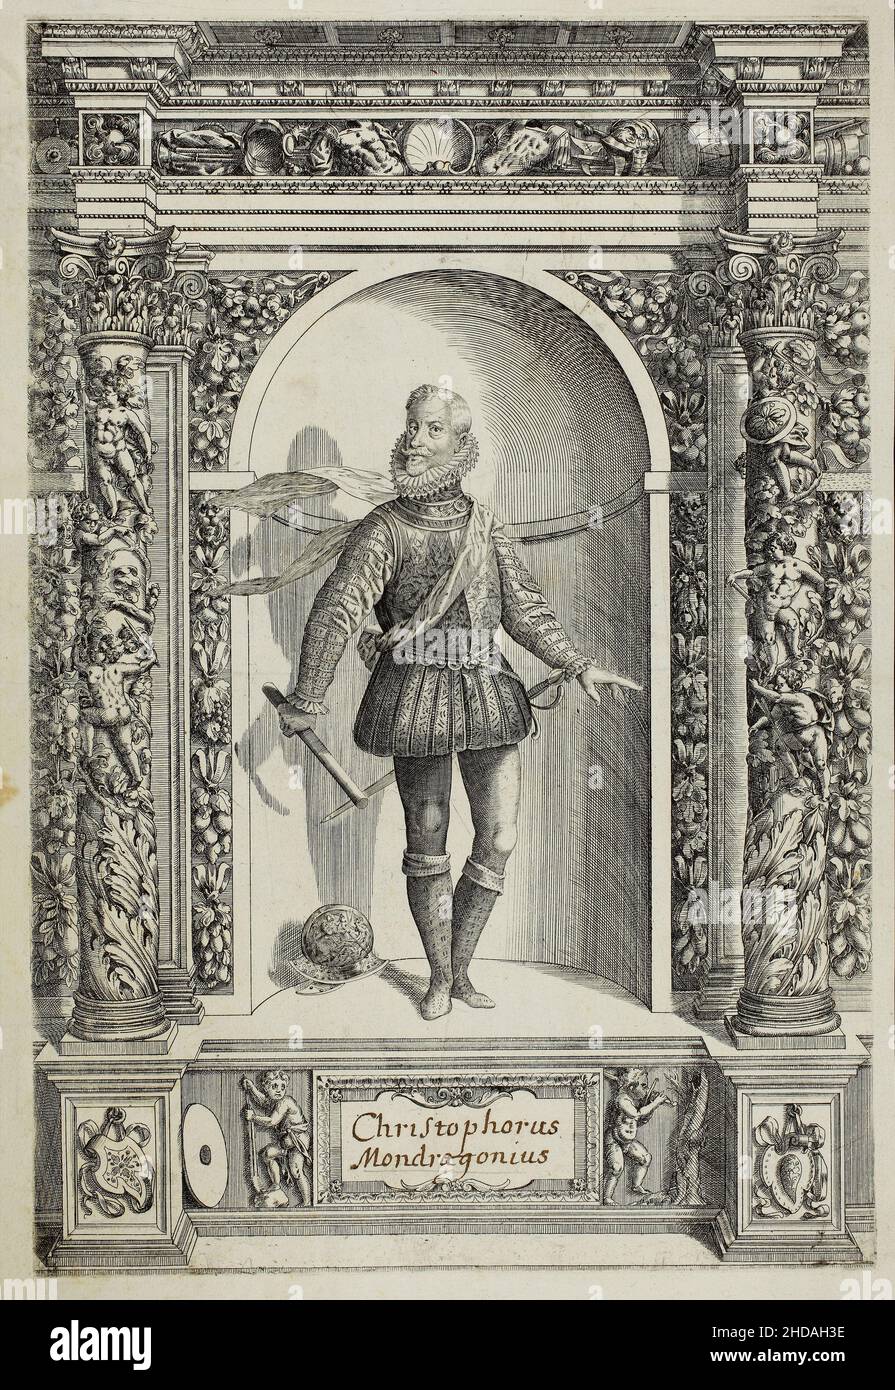 Gravure du portrait de Christophorus Mondragorius.1601 cette gravure du livre de la collection d'armes Archiduke Ferdinand a été publiée pour la première fois Banque D'Images